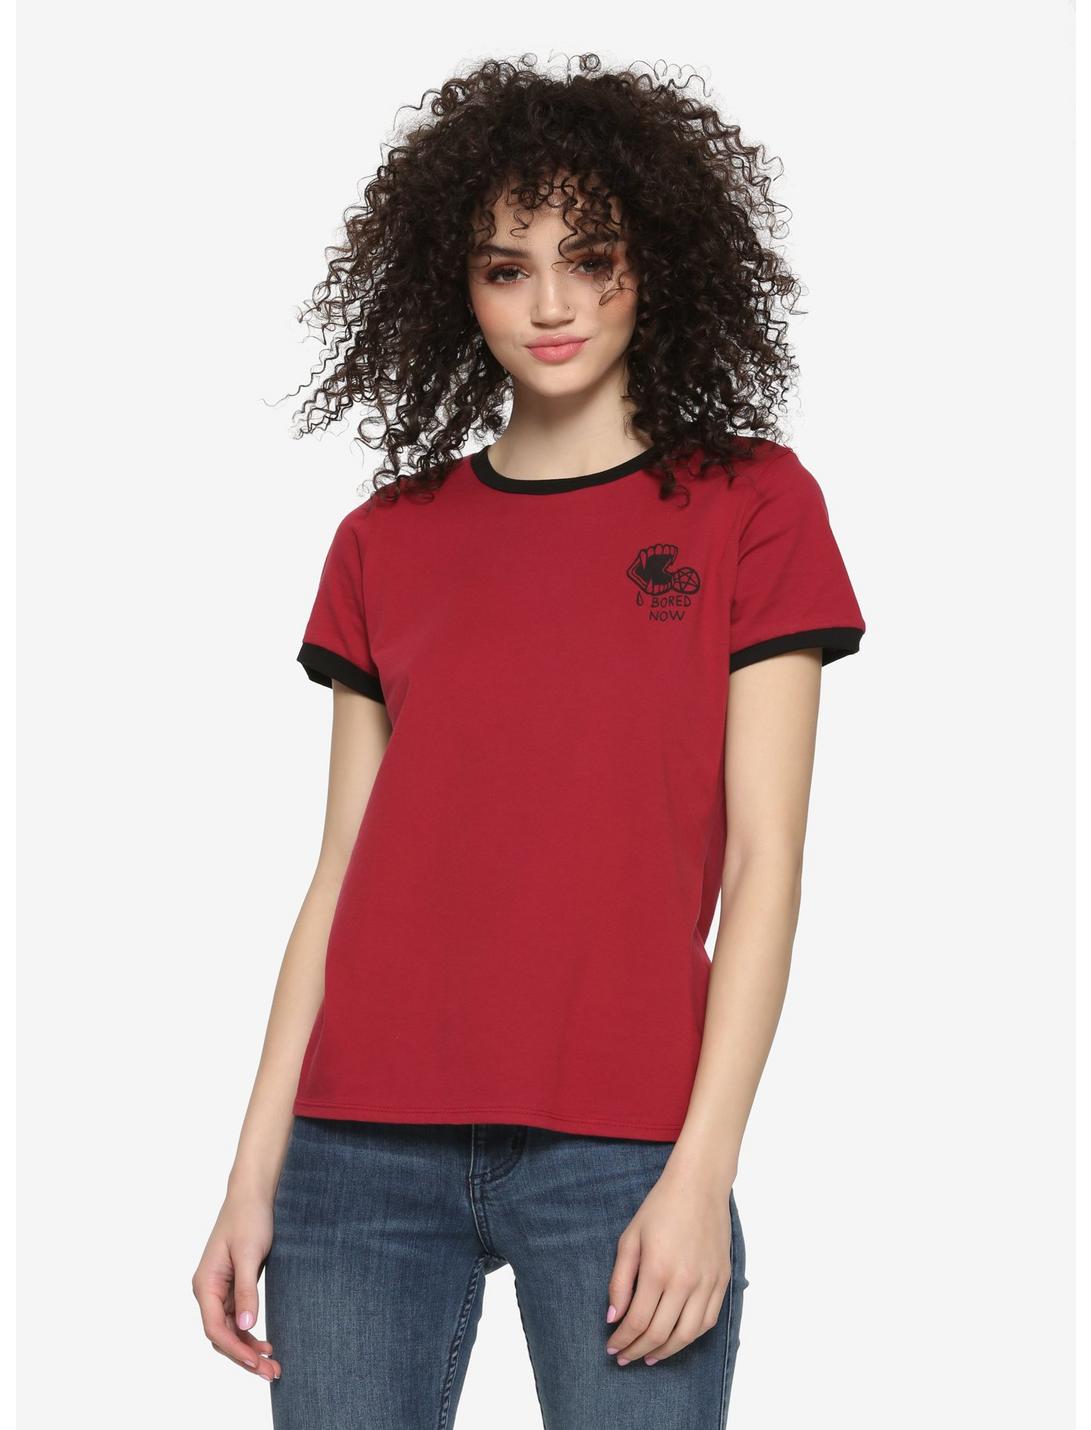 Buffy The Vampire Slayer Vamp Willow Girls Ringer T-Shirt, BLACK, hi-res